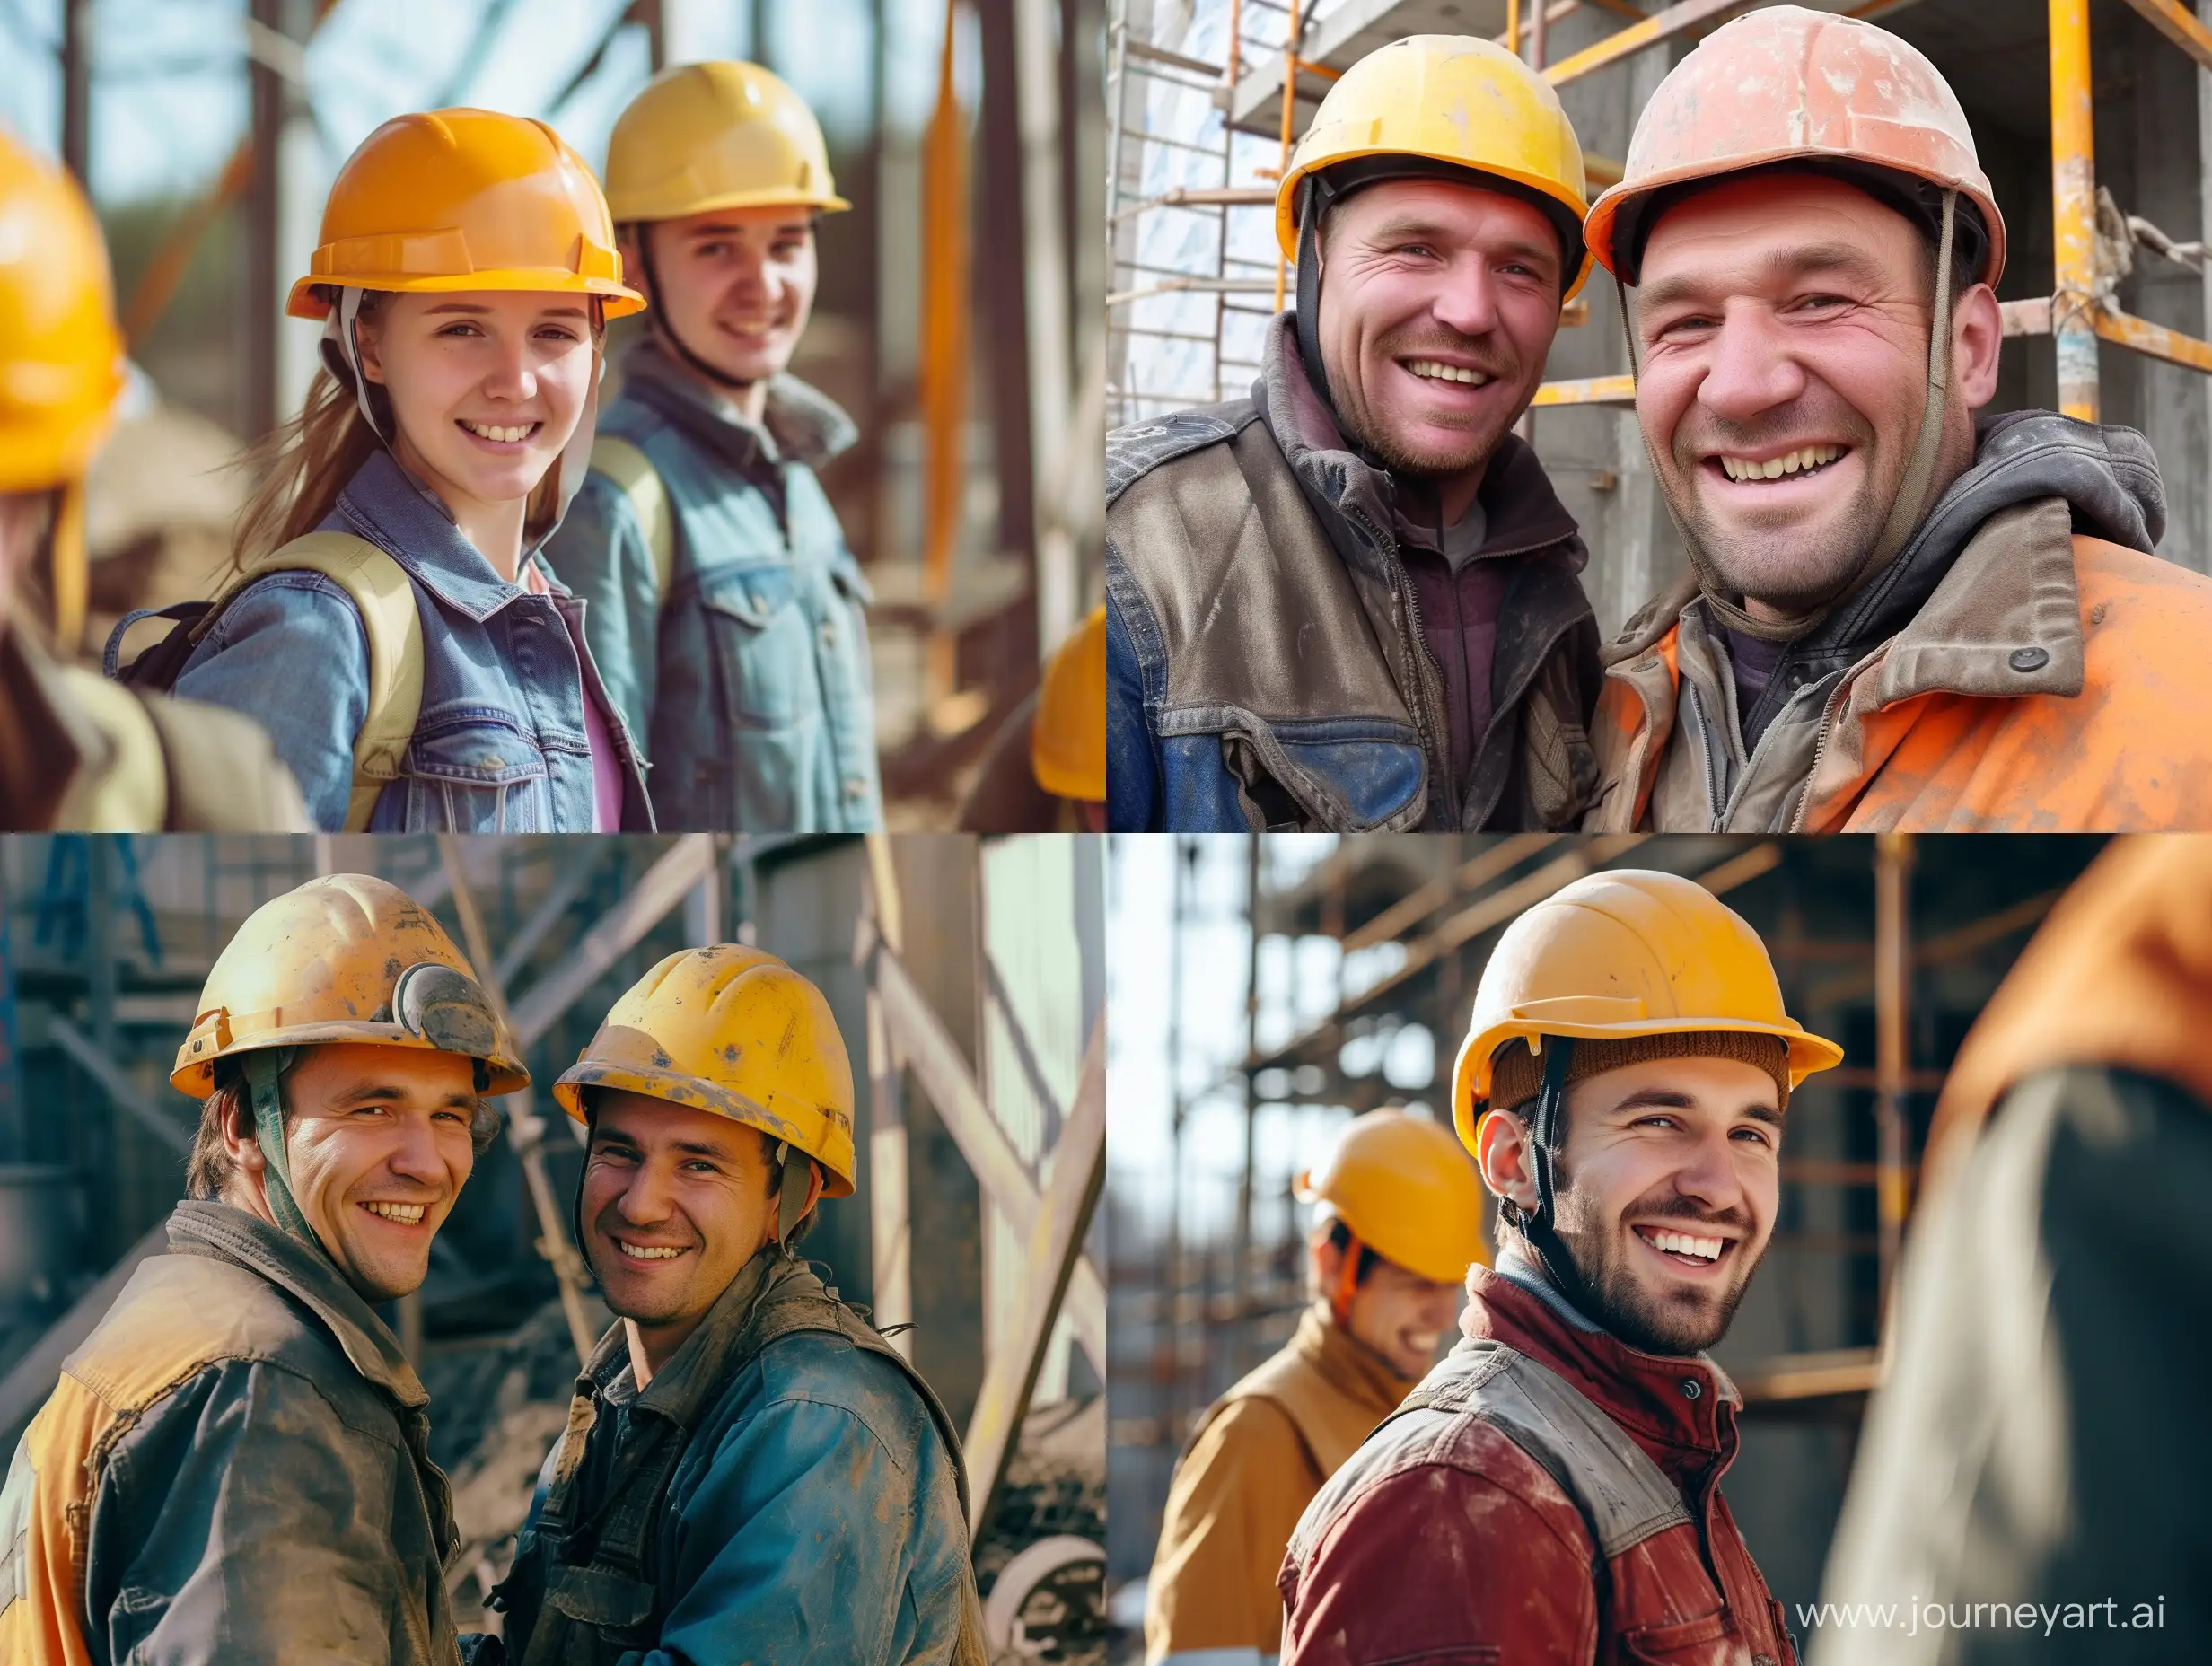 Счастливые работники на стройке в касках.Действие происходит в России . Картинка очень реалистичная . На улице солнечная погода. Строители улыбаются 